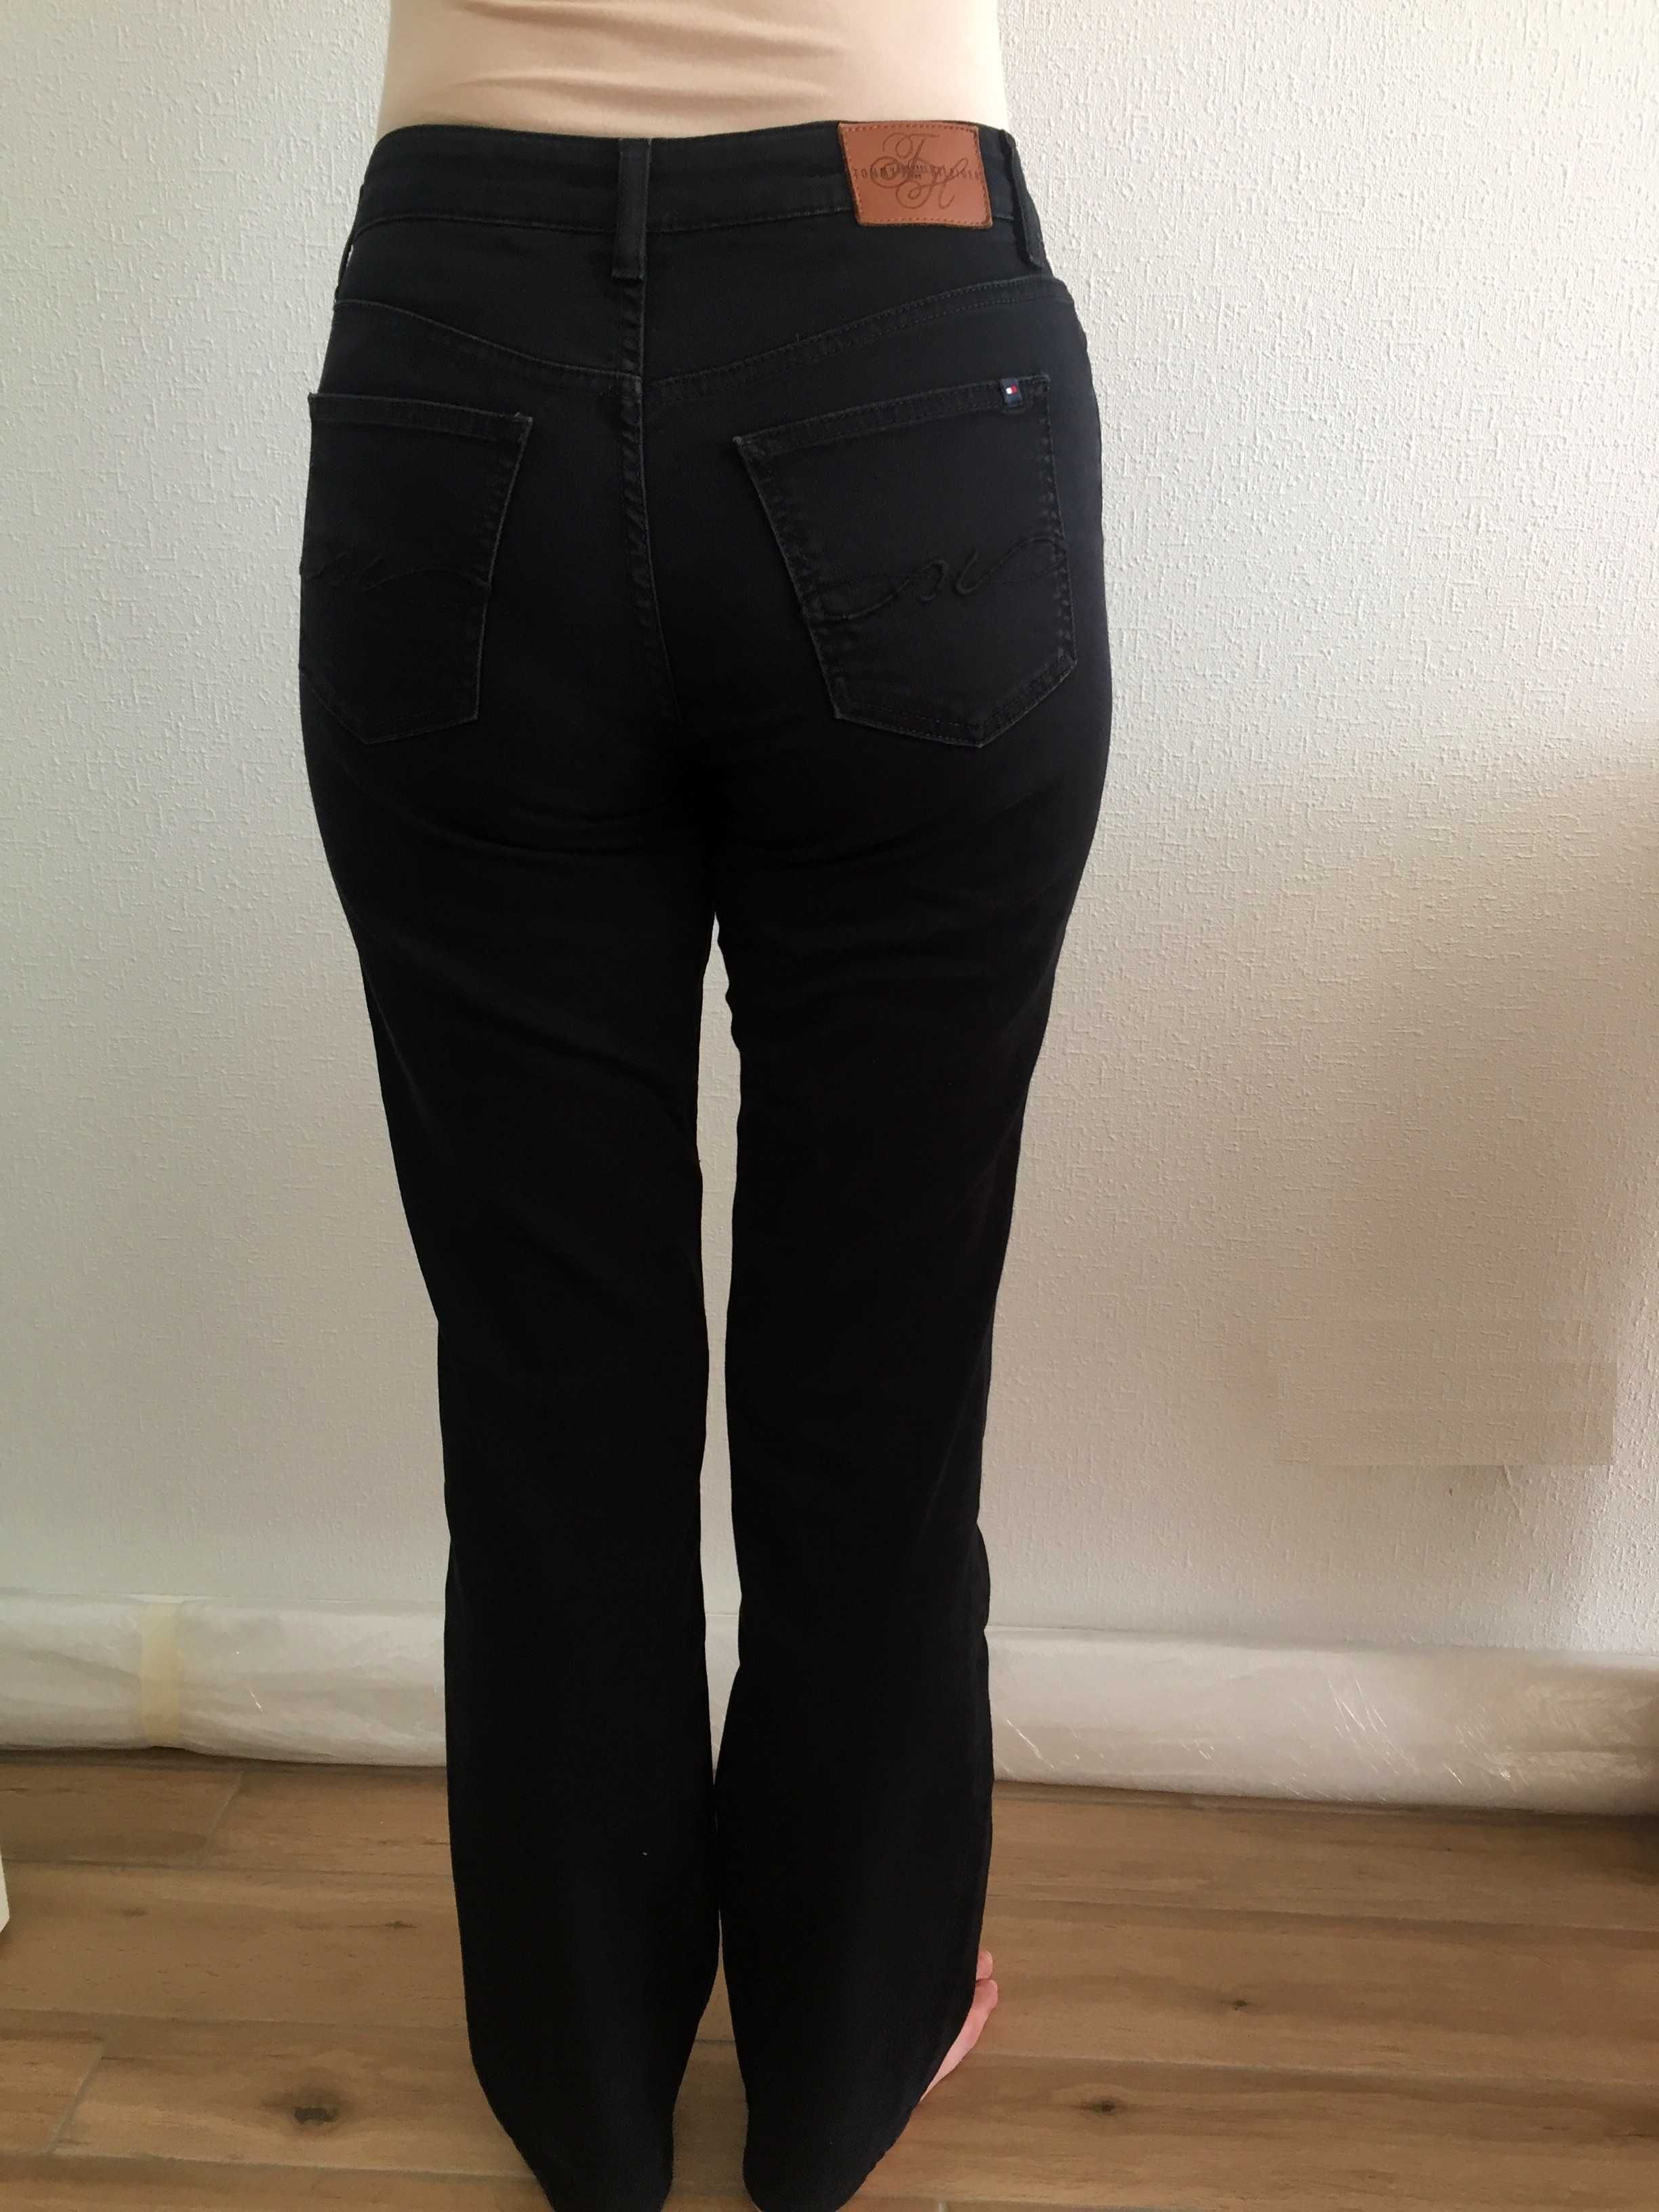 Брюки Tommy Hilfiger, размер 27/34 + подарок (брюки летние, стильные)